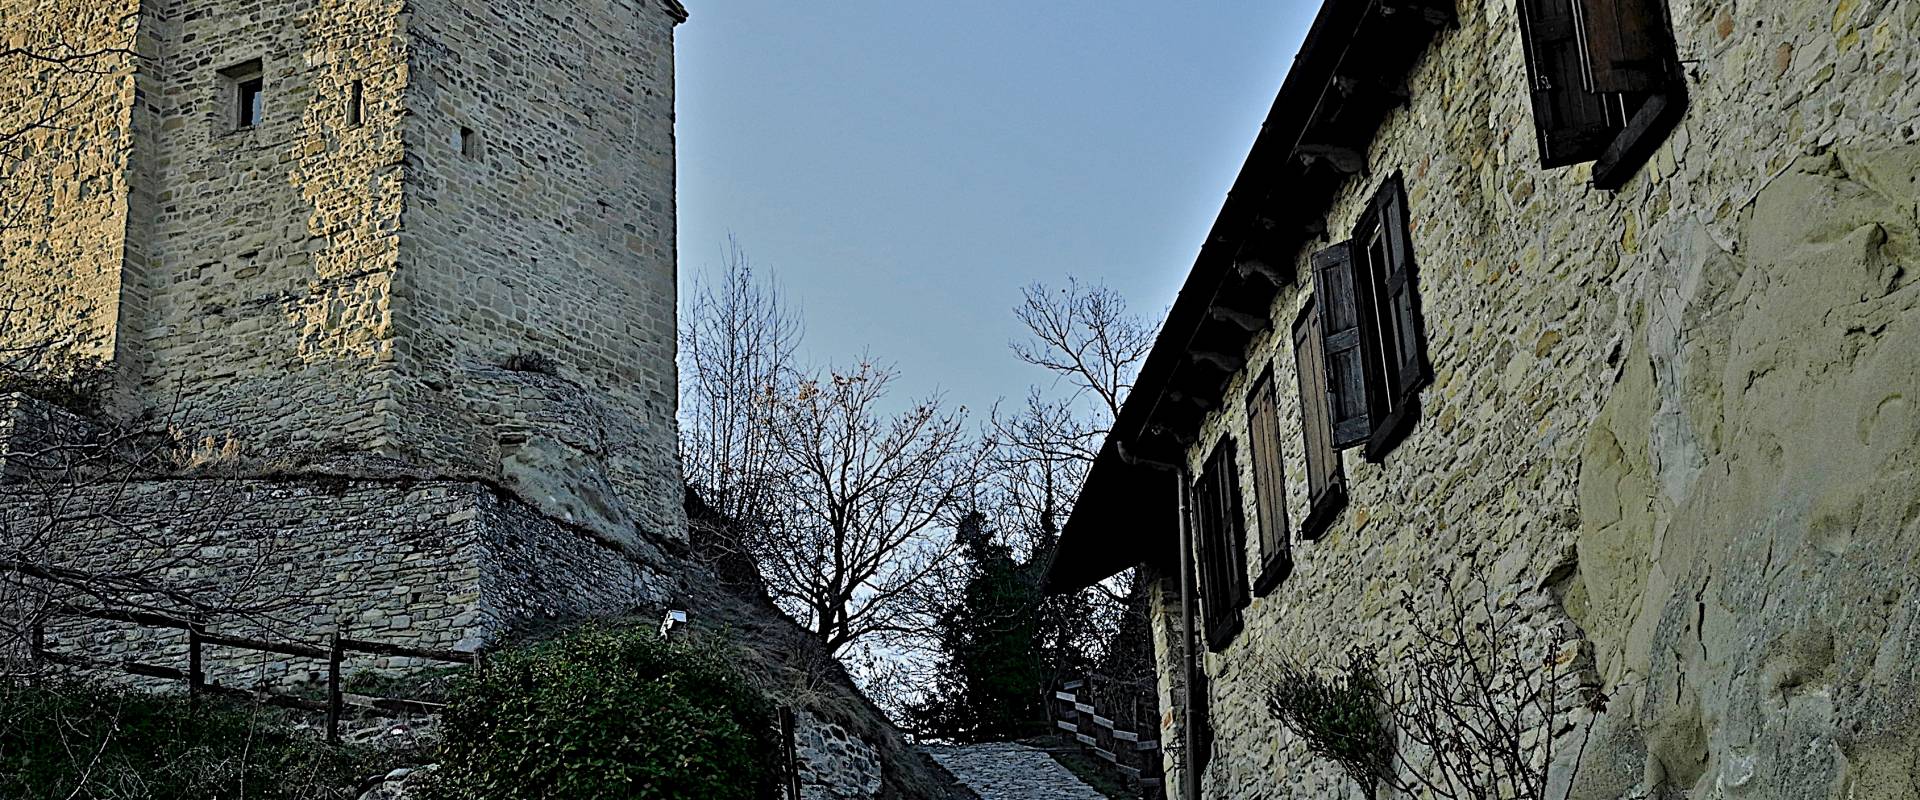 Salita al Castello di Carpineti photo by Caba2011